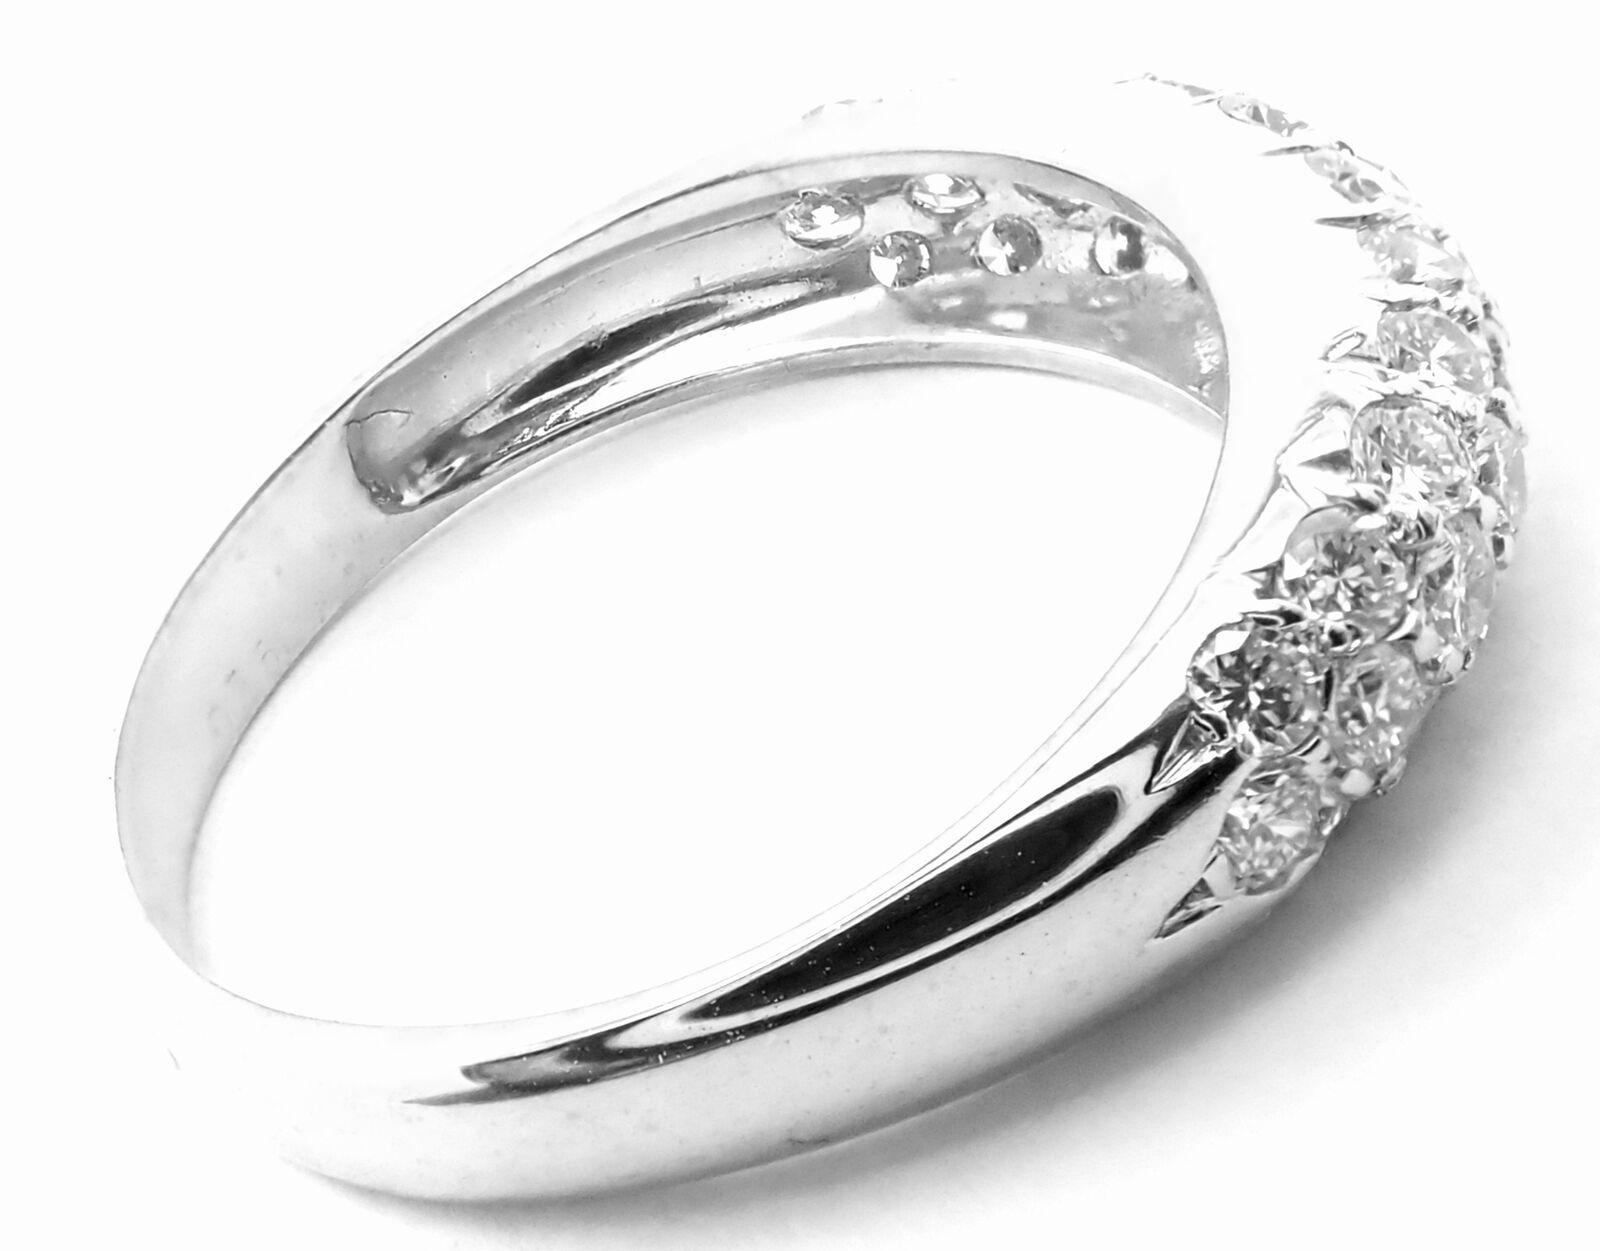 bague à anneau avec diamants en or blanc 18k de Van Cleef & Arpels.
Avec des diamants ronds de taille Brilliant VS1 clarté, couleur G poids total approximatif  3.04ct
Détails : 
Taille : 5 3/4
Largeur : 5mm
Poids : 2,7 grammes
Poinçons estampillés :